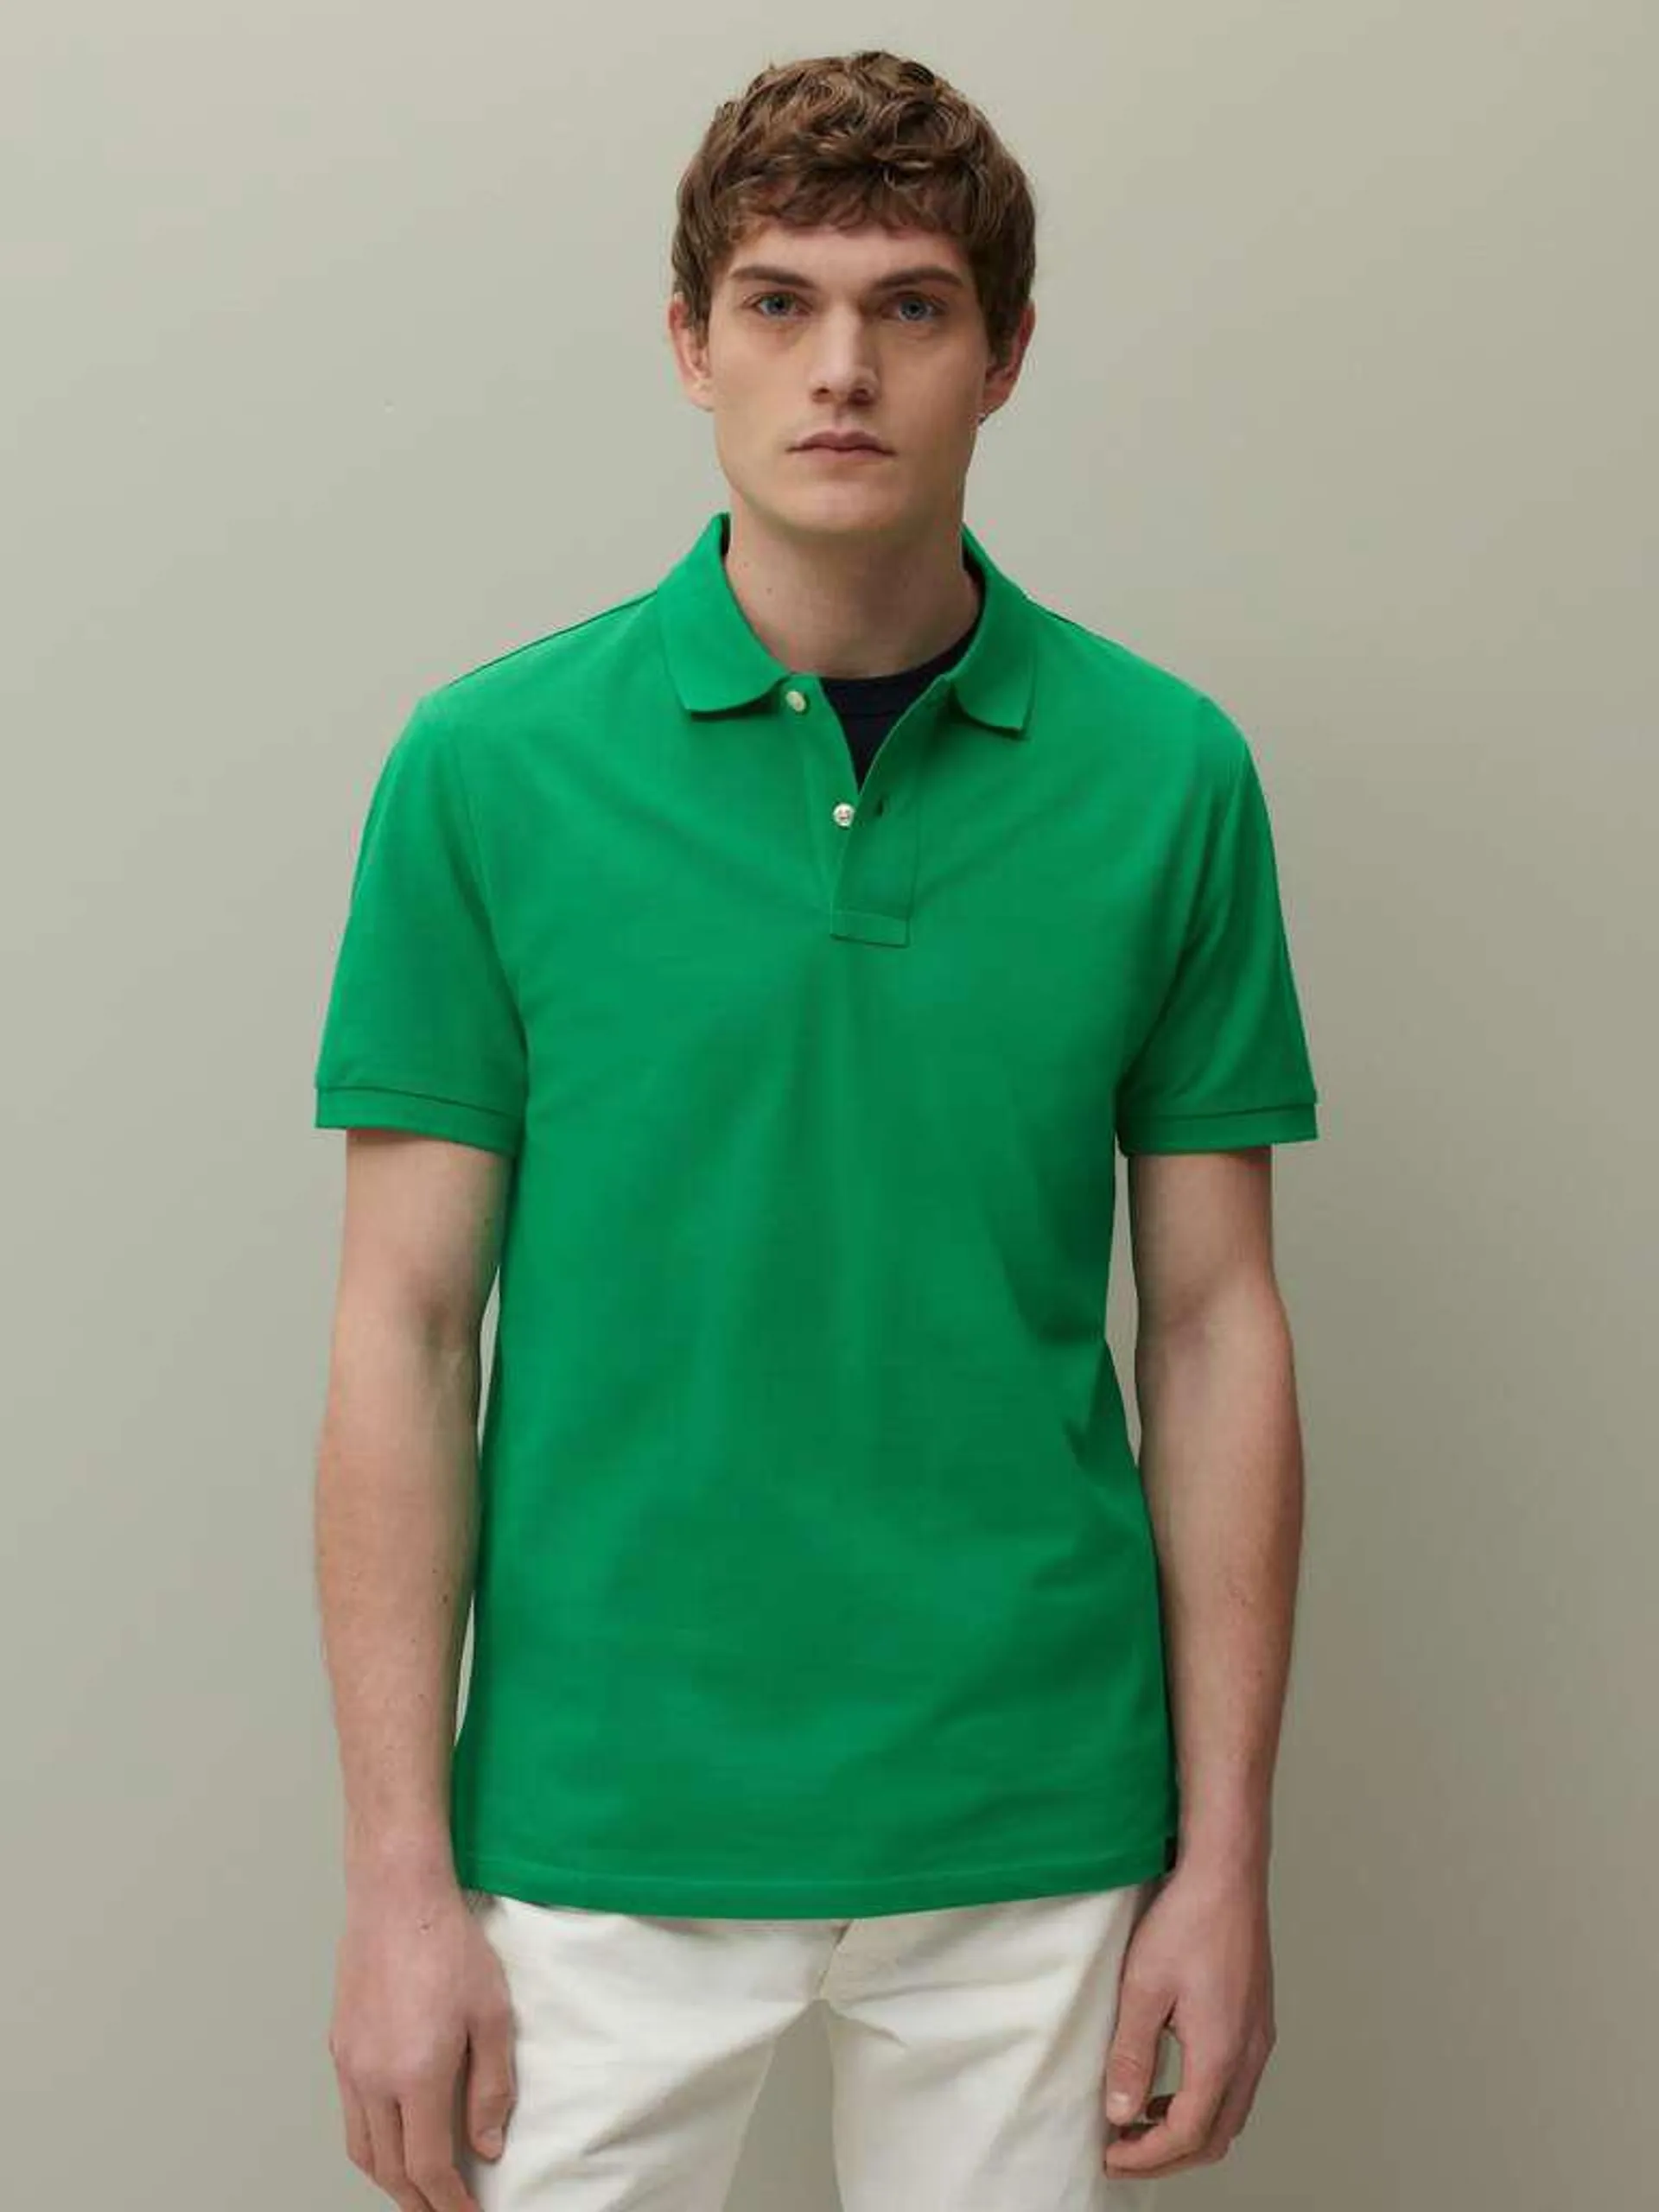 Emerald Green Supima cotton pique polo shirt